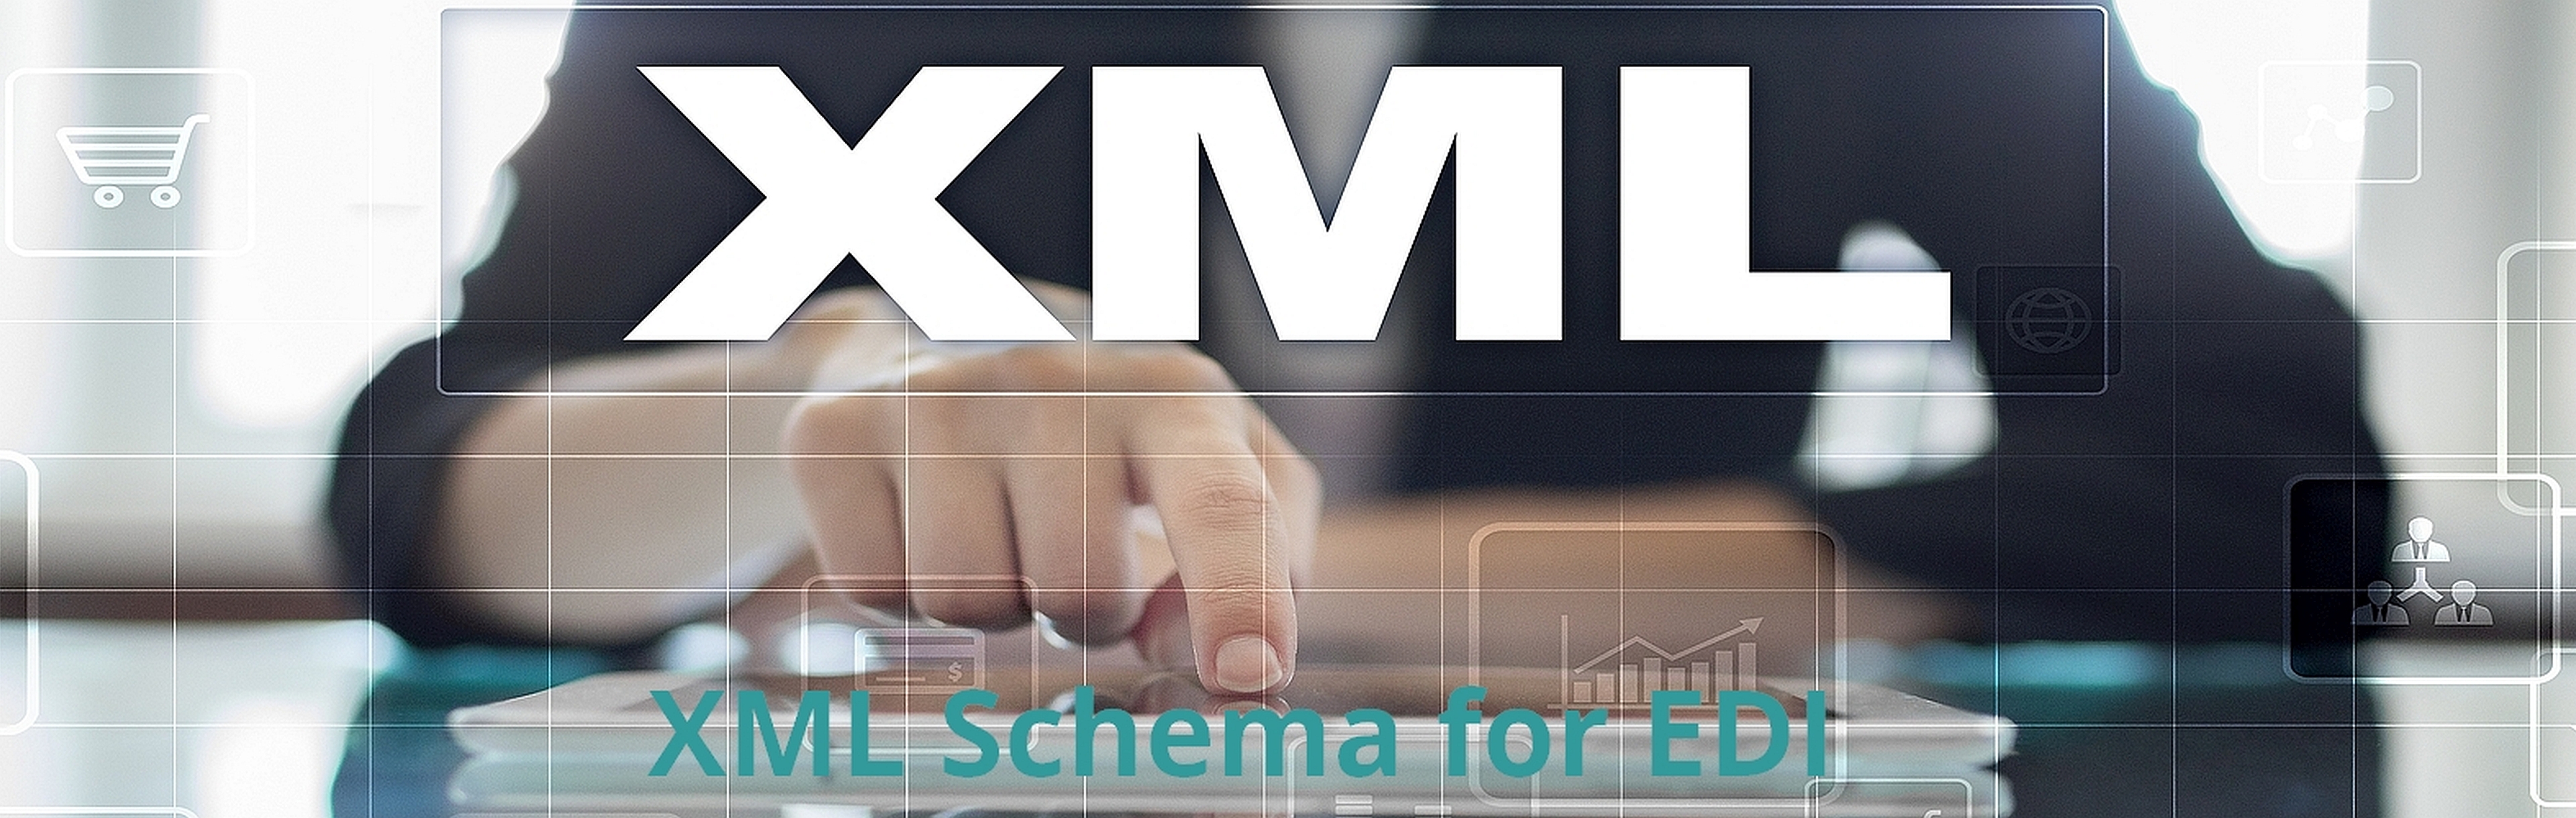 Das Bild zeigt einen Mann, der mit dem Zeigefinger auf ein Tablett zeigt, und den Text XML Schema for EDI.